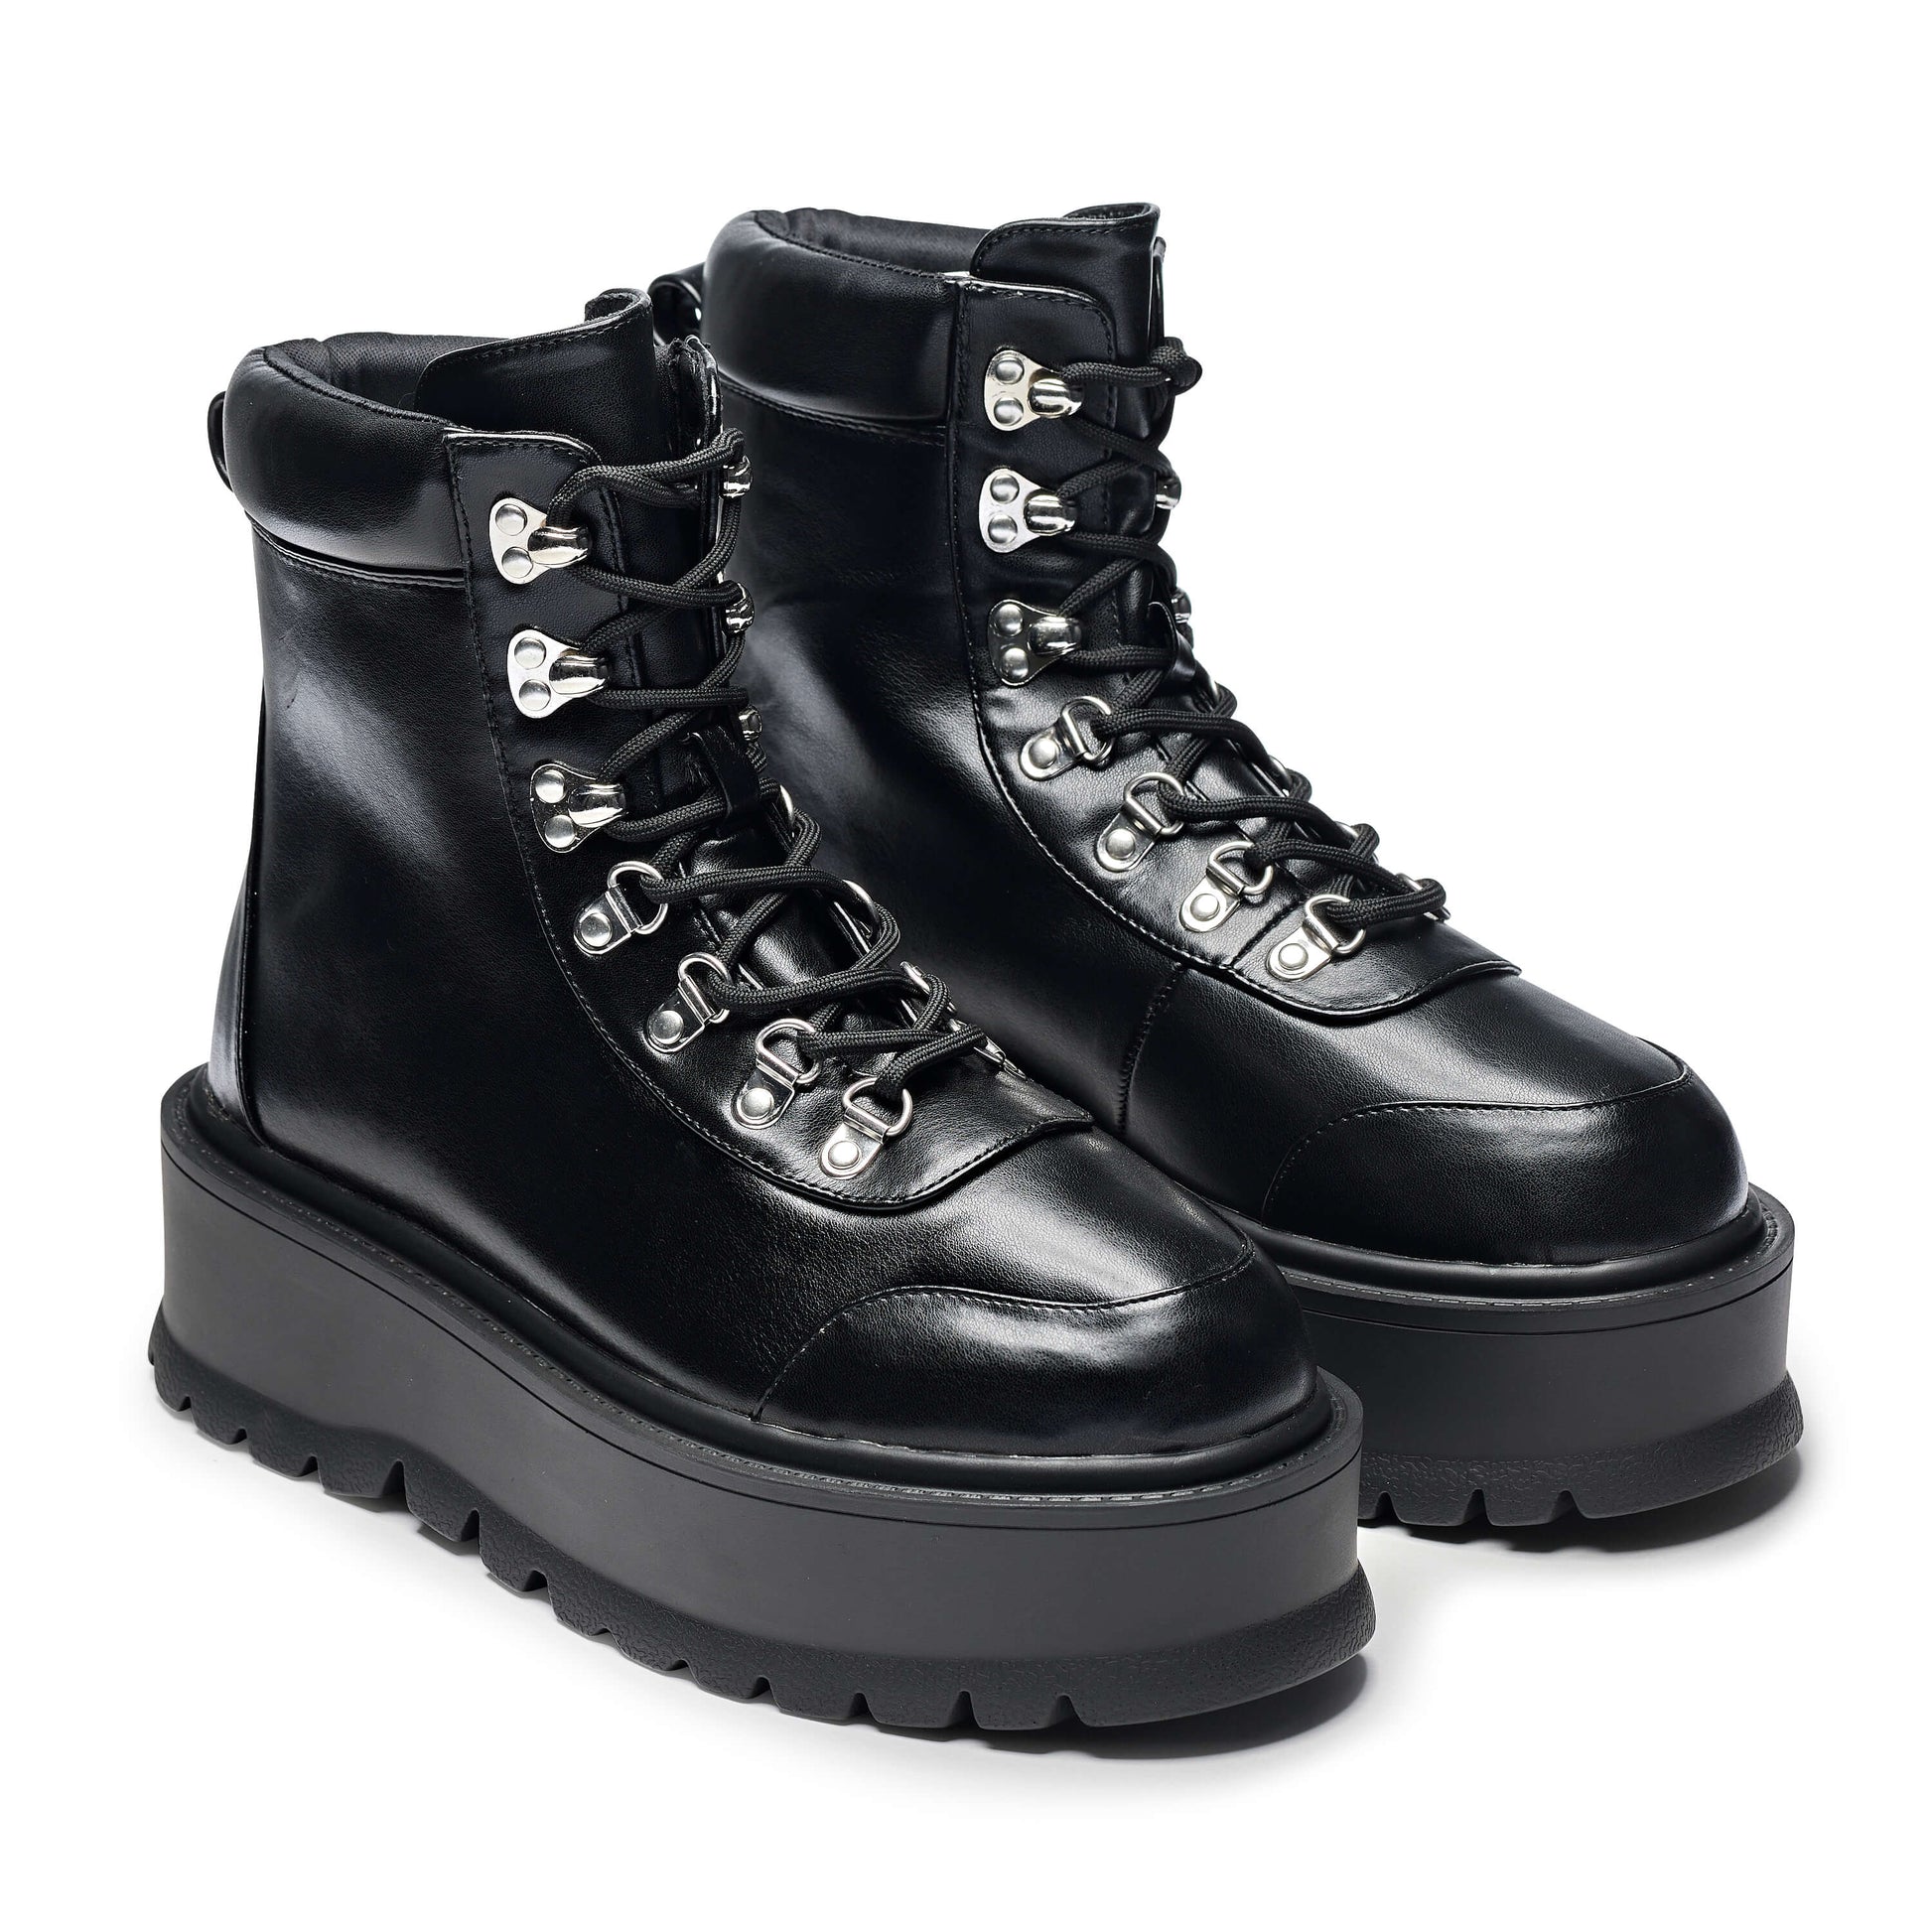 HYDRA All Black Matrix Platform Boots - Ankle Boots - KOI Footwear - Black - Three-Quarter View